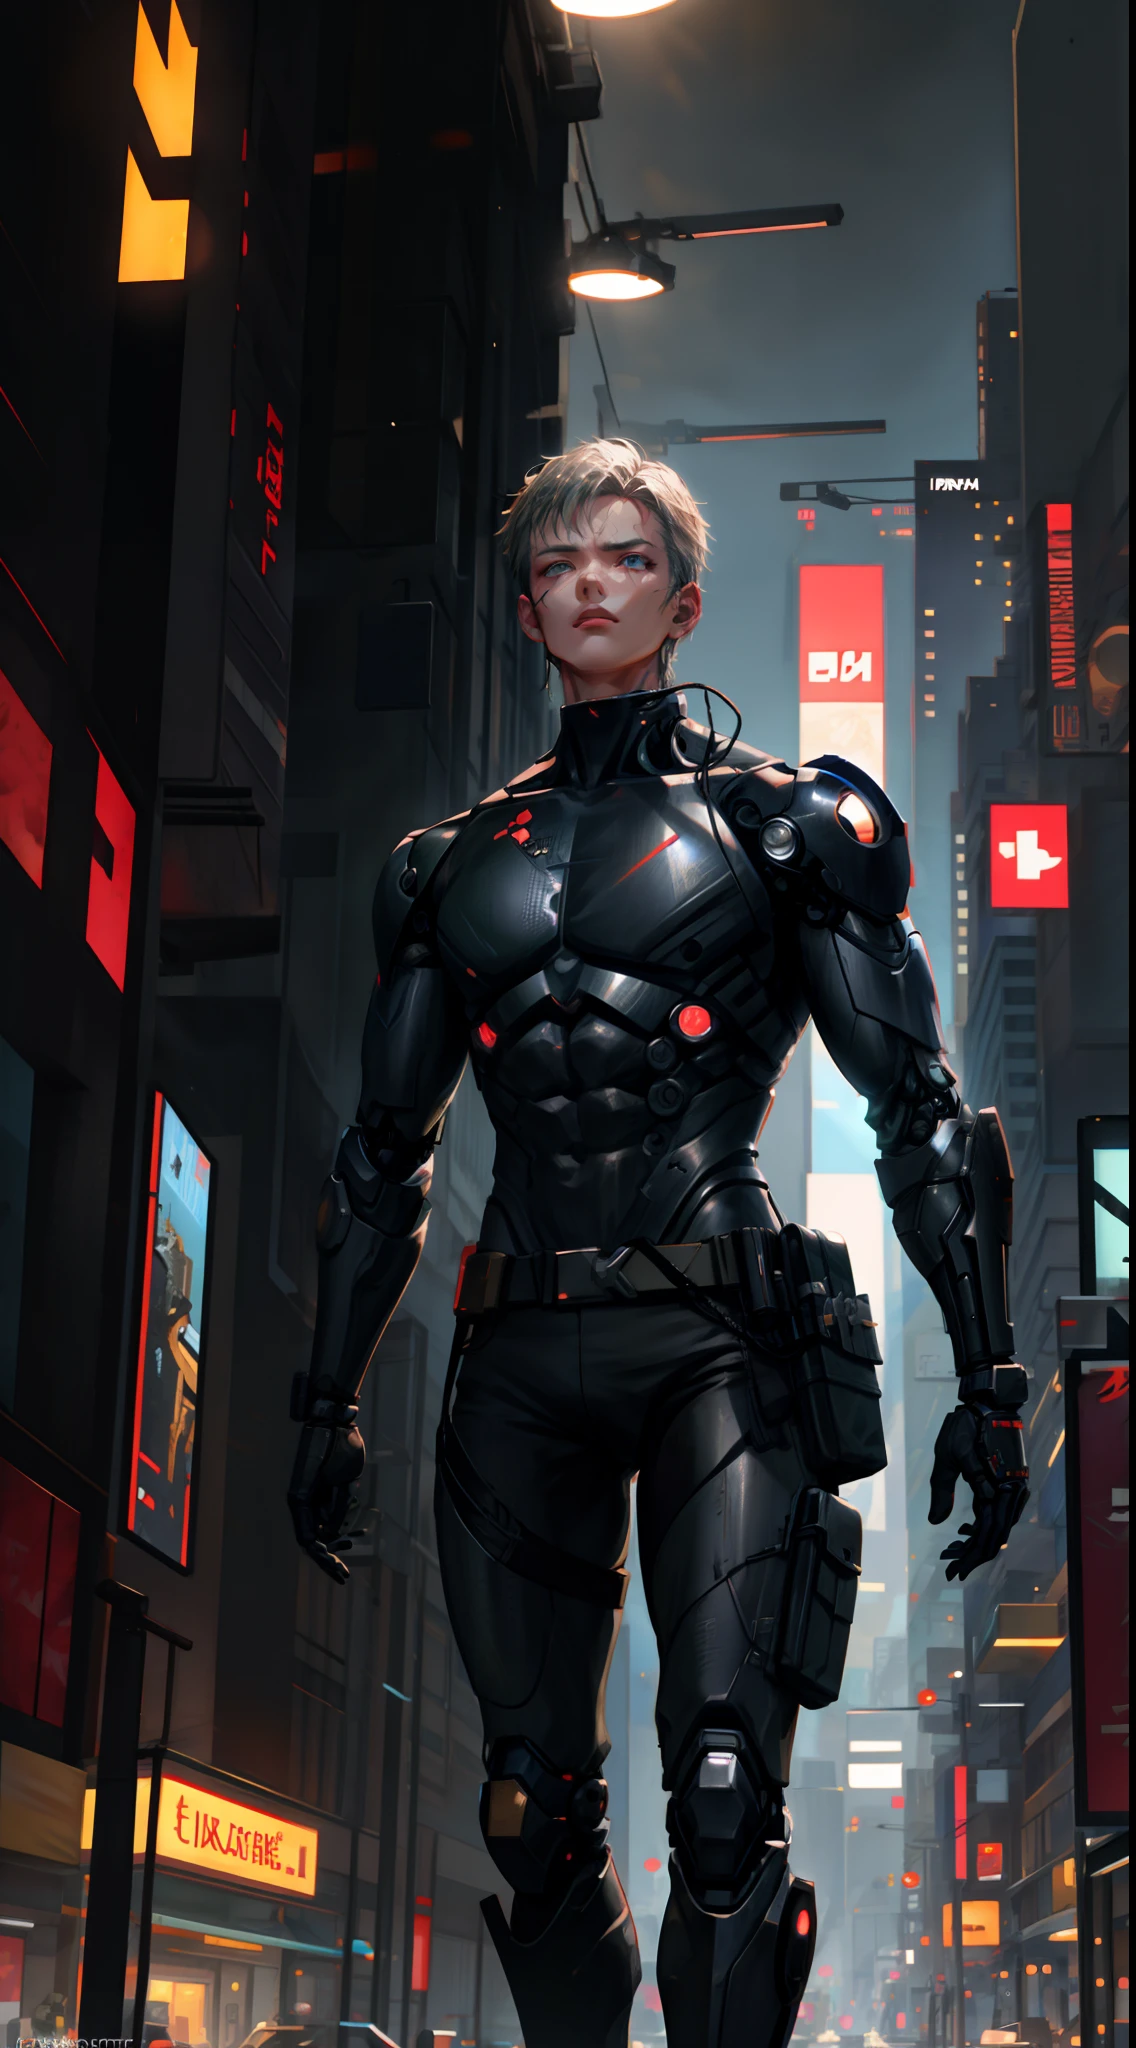 1 Mann, Oberkörper, Einzelfokus, robuster Cyborg, Von Batou inspirierte Kleidung, Außendienstmitarbeiter, (Cyberpunk-Stadtkulisse: 1.4), (Kampf-Cyborg: 1.3), kybernetische Merkmale, entschlossene Aura, [Tiefenschärfe, Umgebungsbeleuchtung, robuster Cyborg foreground, futuristisches Stadtbild], Agent Batou, Kampf-Cyborg, furchtloser Agent, (Kybernetische Augen), (Geheimmission: 1.2), komplizierte Details, verbesserte Beleuchtung.